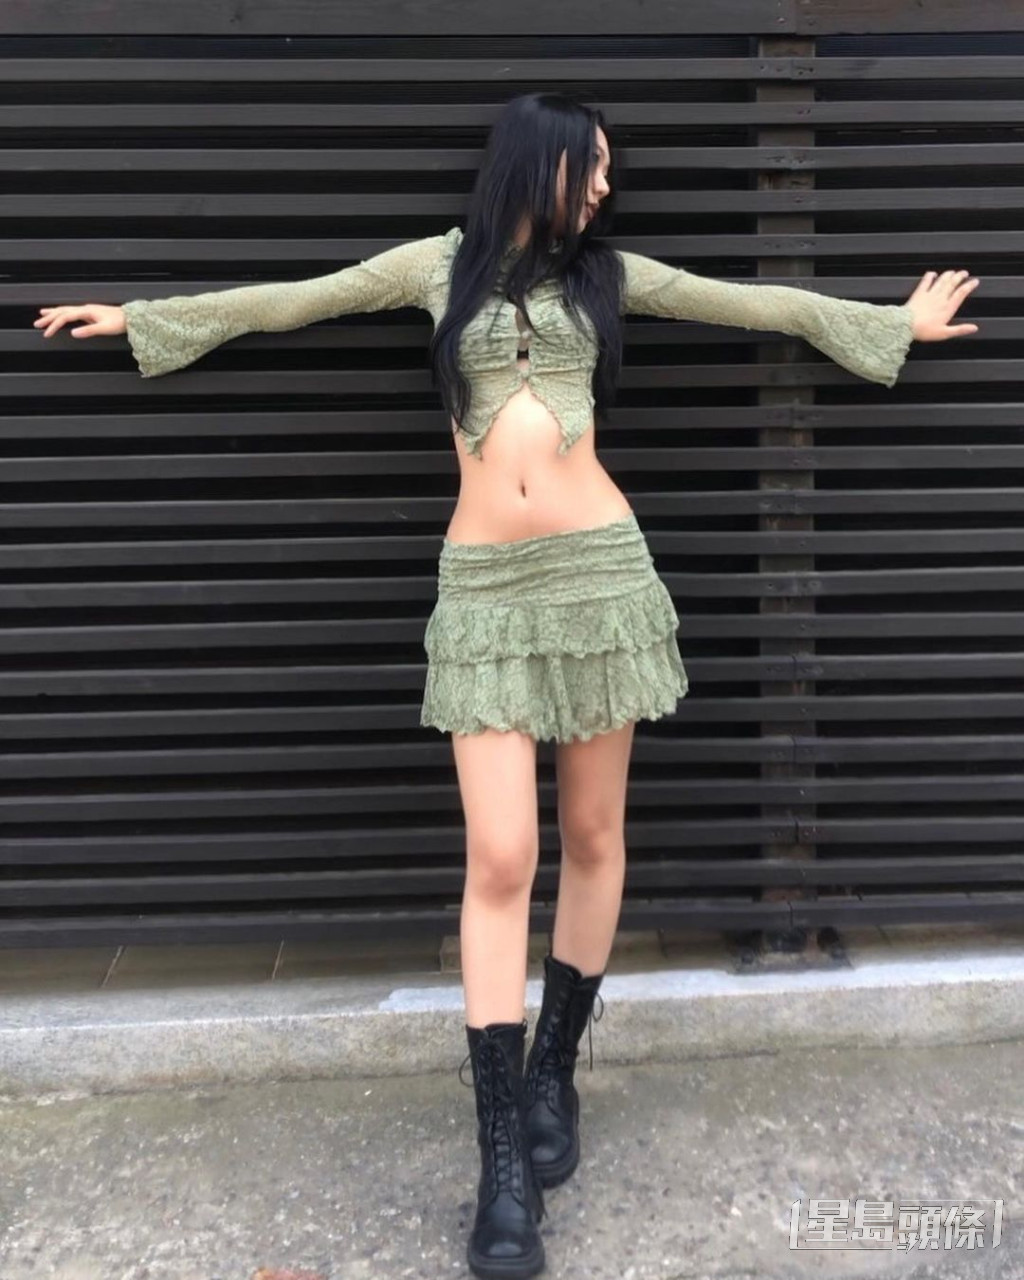 模特兒池敏珠曾被指是曹圭成的女友。